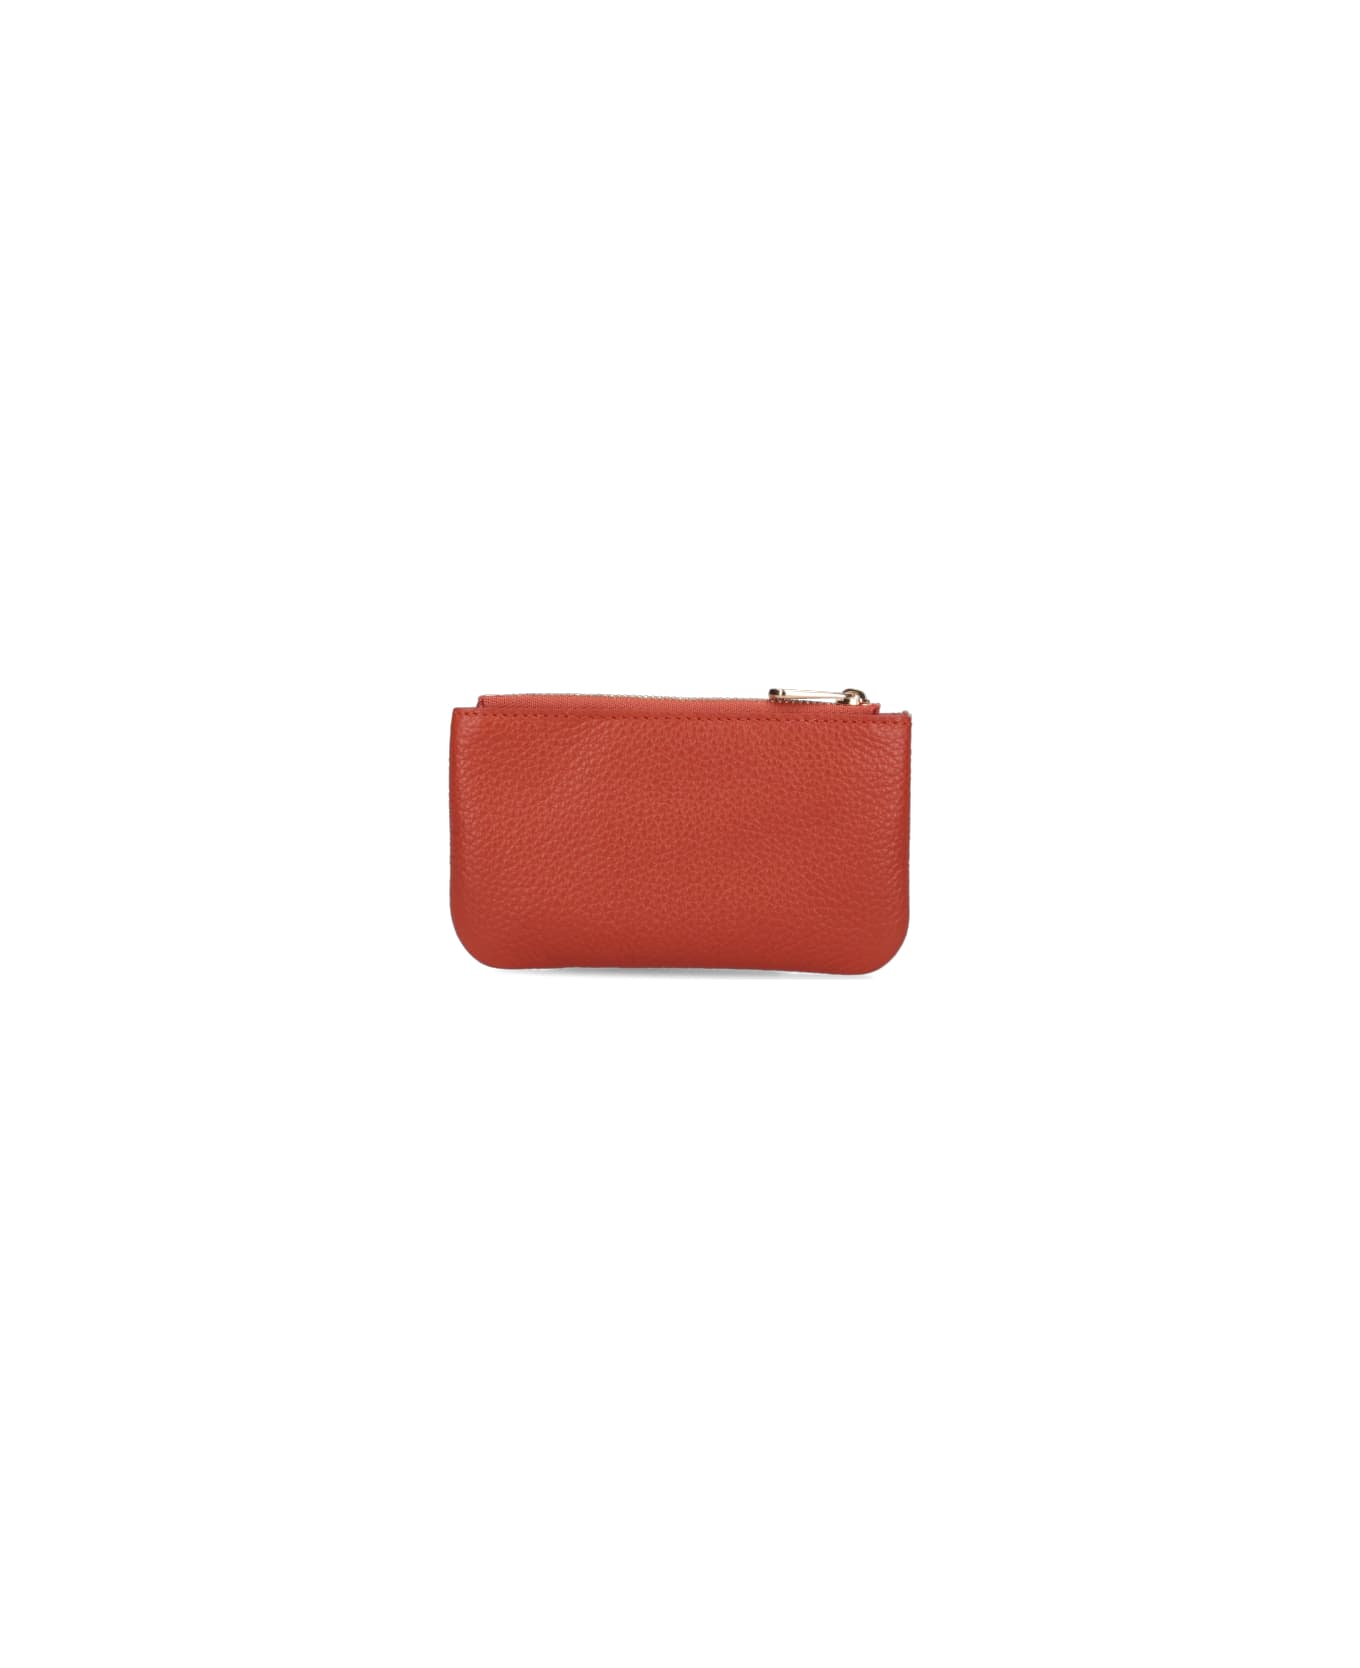 Ferragamo 'gancini' Keyring - Red 財布